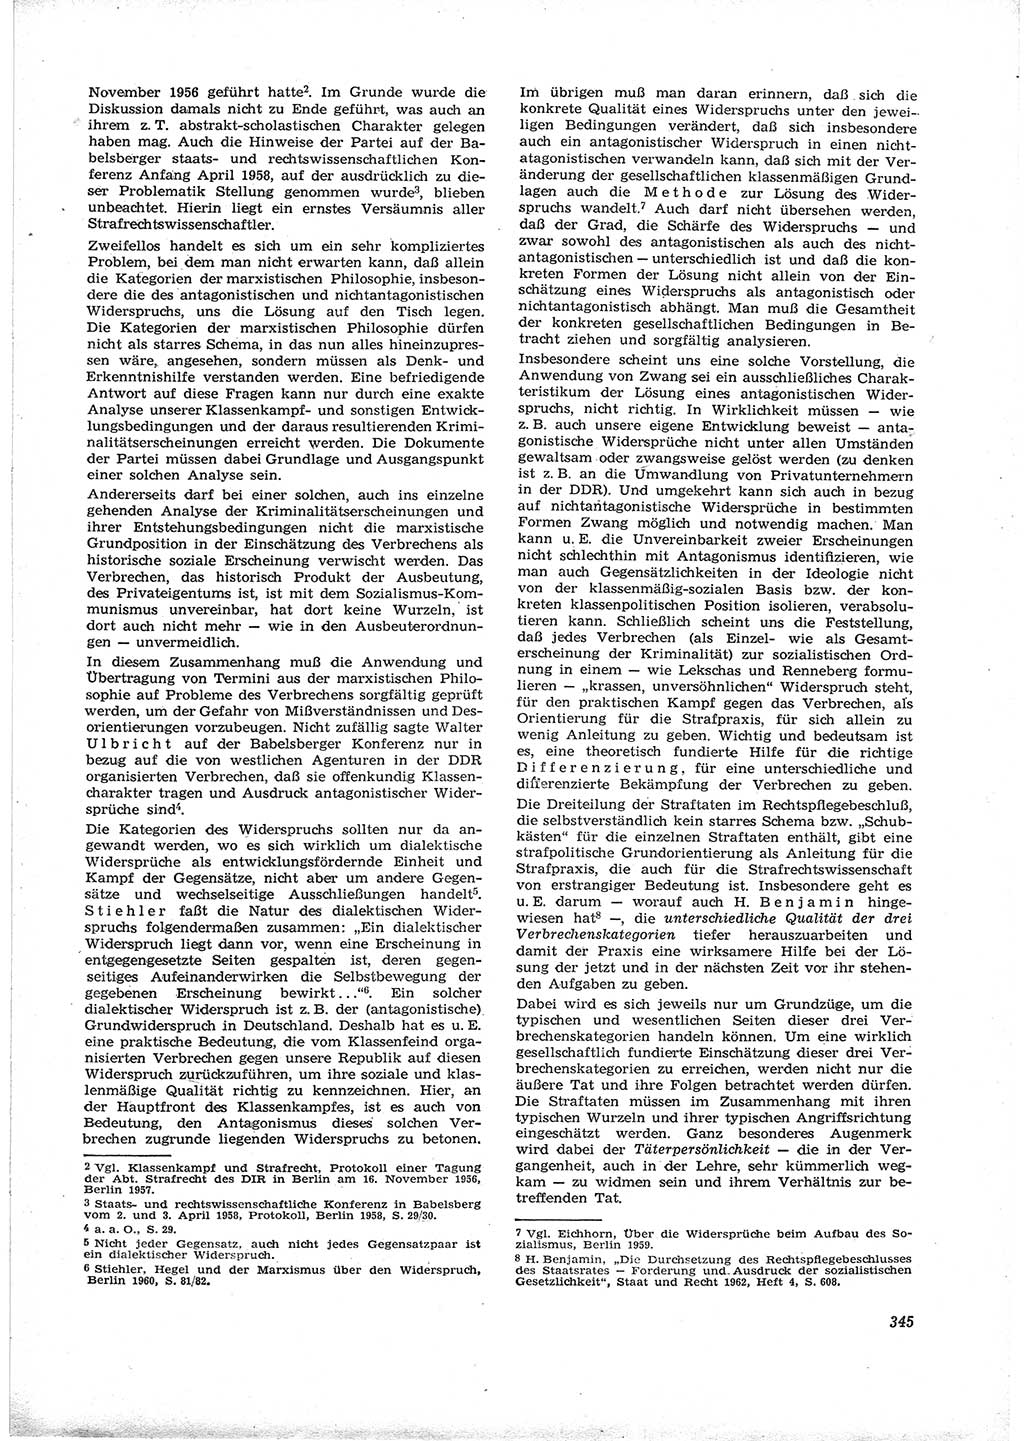 Neue Justiz (NJ), Zeitschrift für Recht und Rechtswissenschaft [Deutsche Demokratische Republik (DDR)], 16. Jahrgang 1962, Seite 345 (NJ DDR 1962, S. 345)